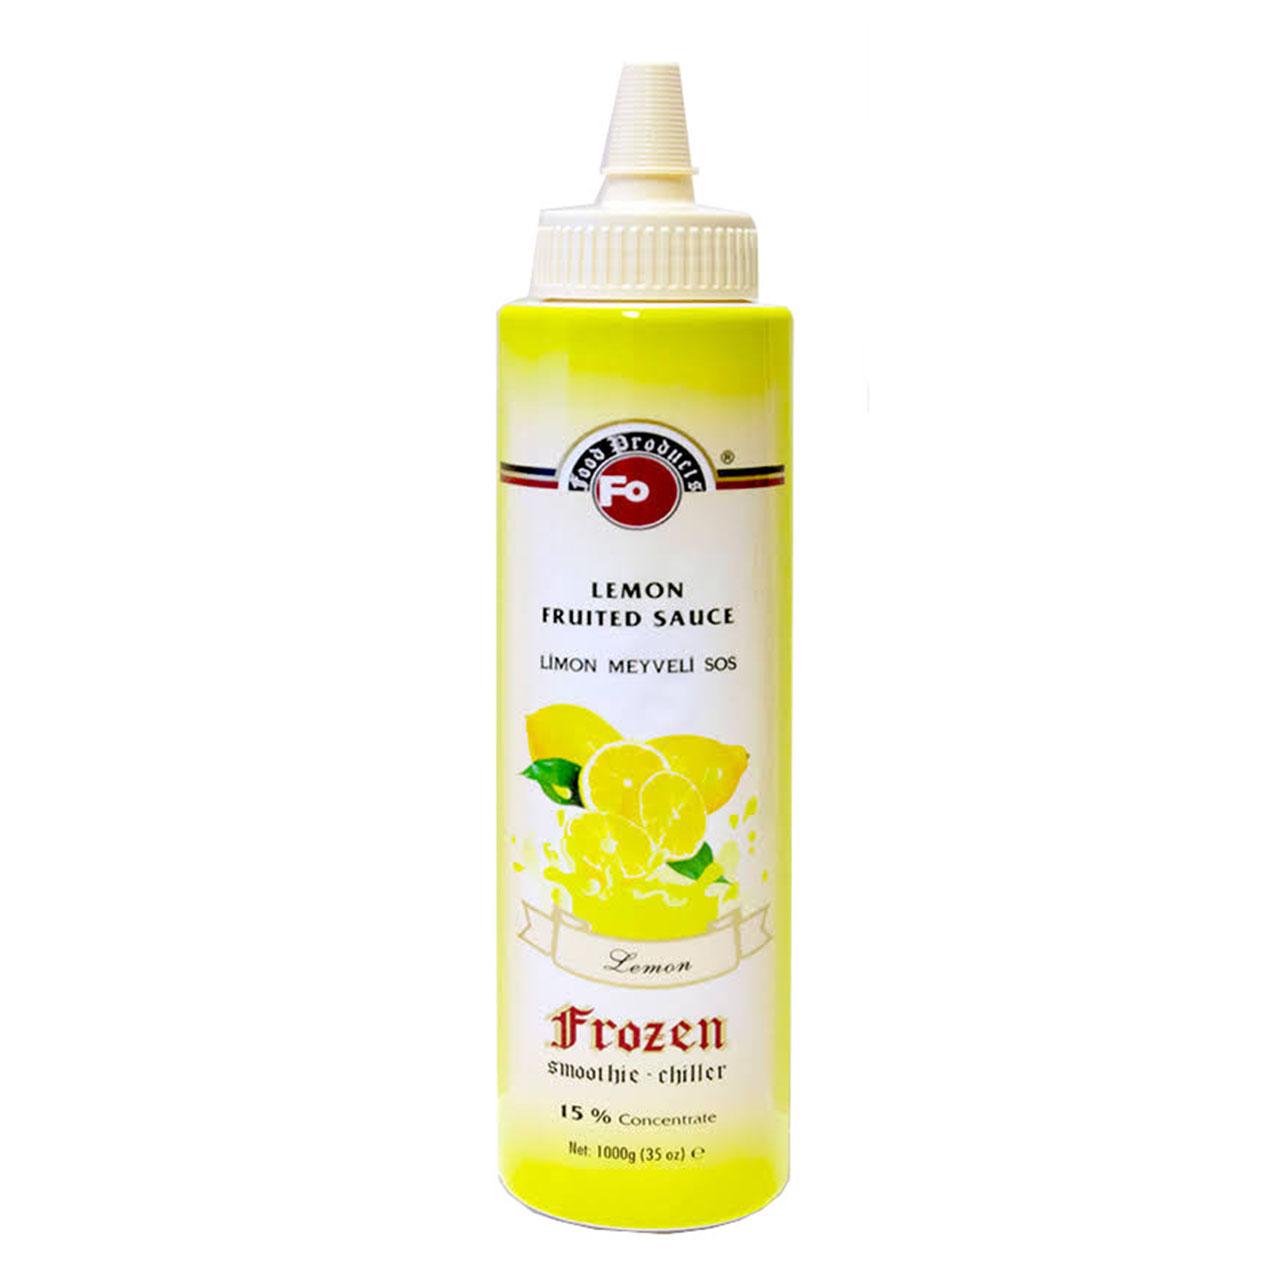 Fo Frozen Limon Meyveli Sos %60 Gerçek Meyve Püresi 1000 Gr